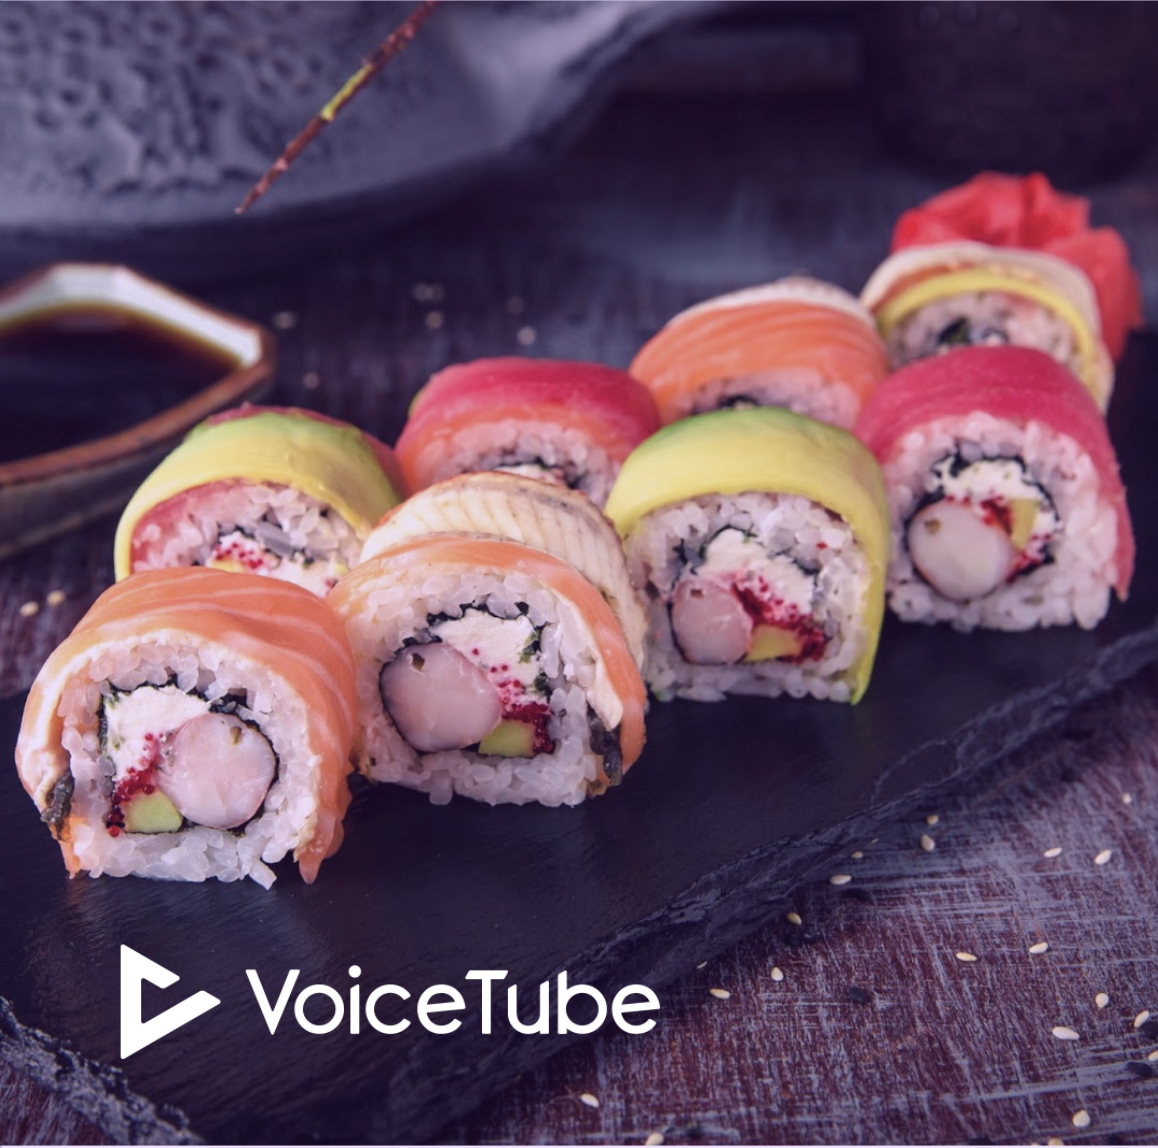 以前居然被稱作嘔吐物？！來看日本壽司是如何發揚光大的！